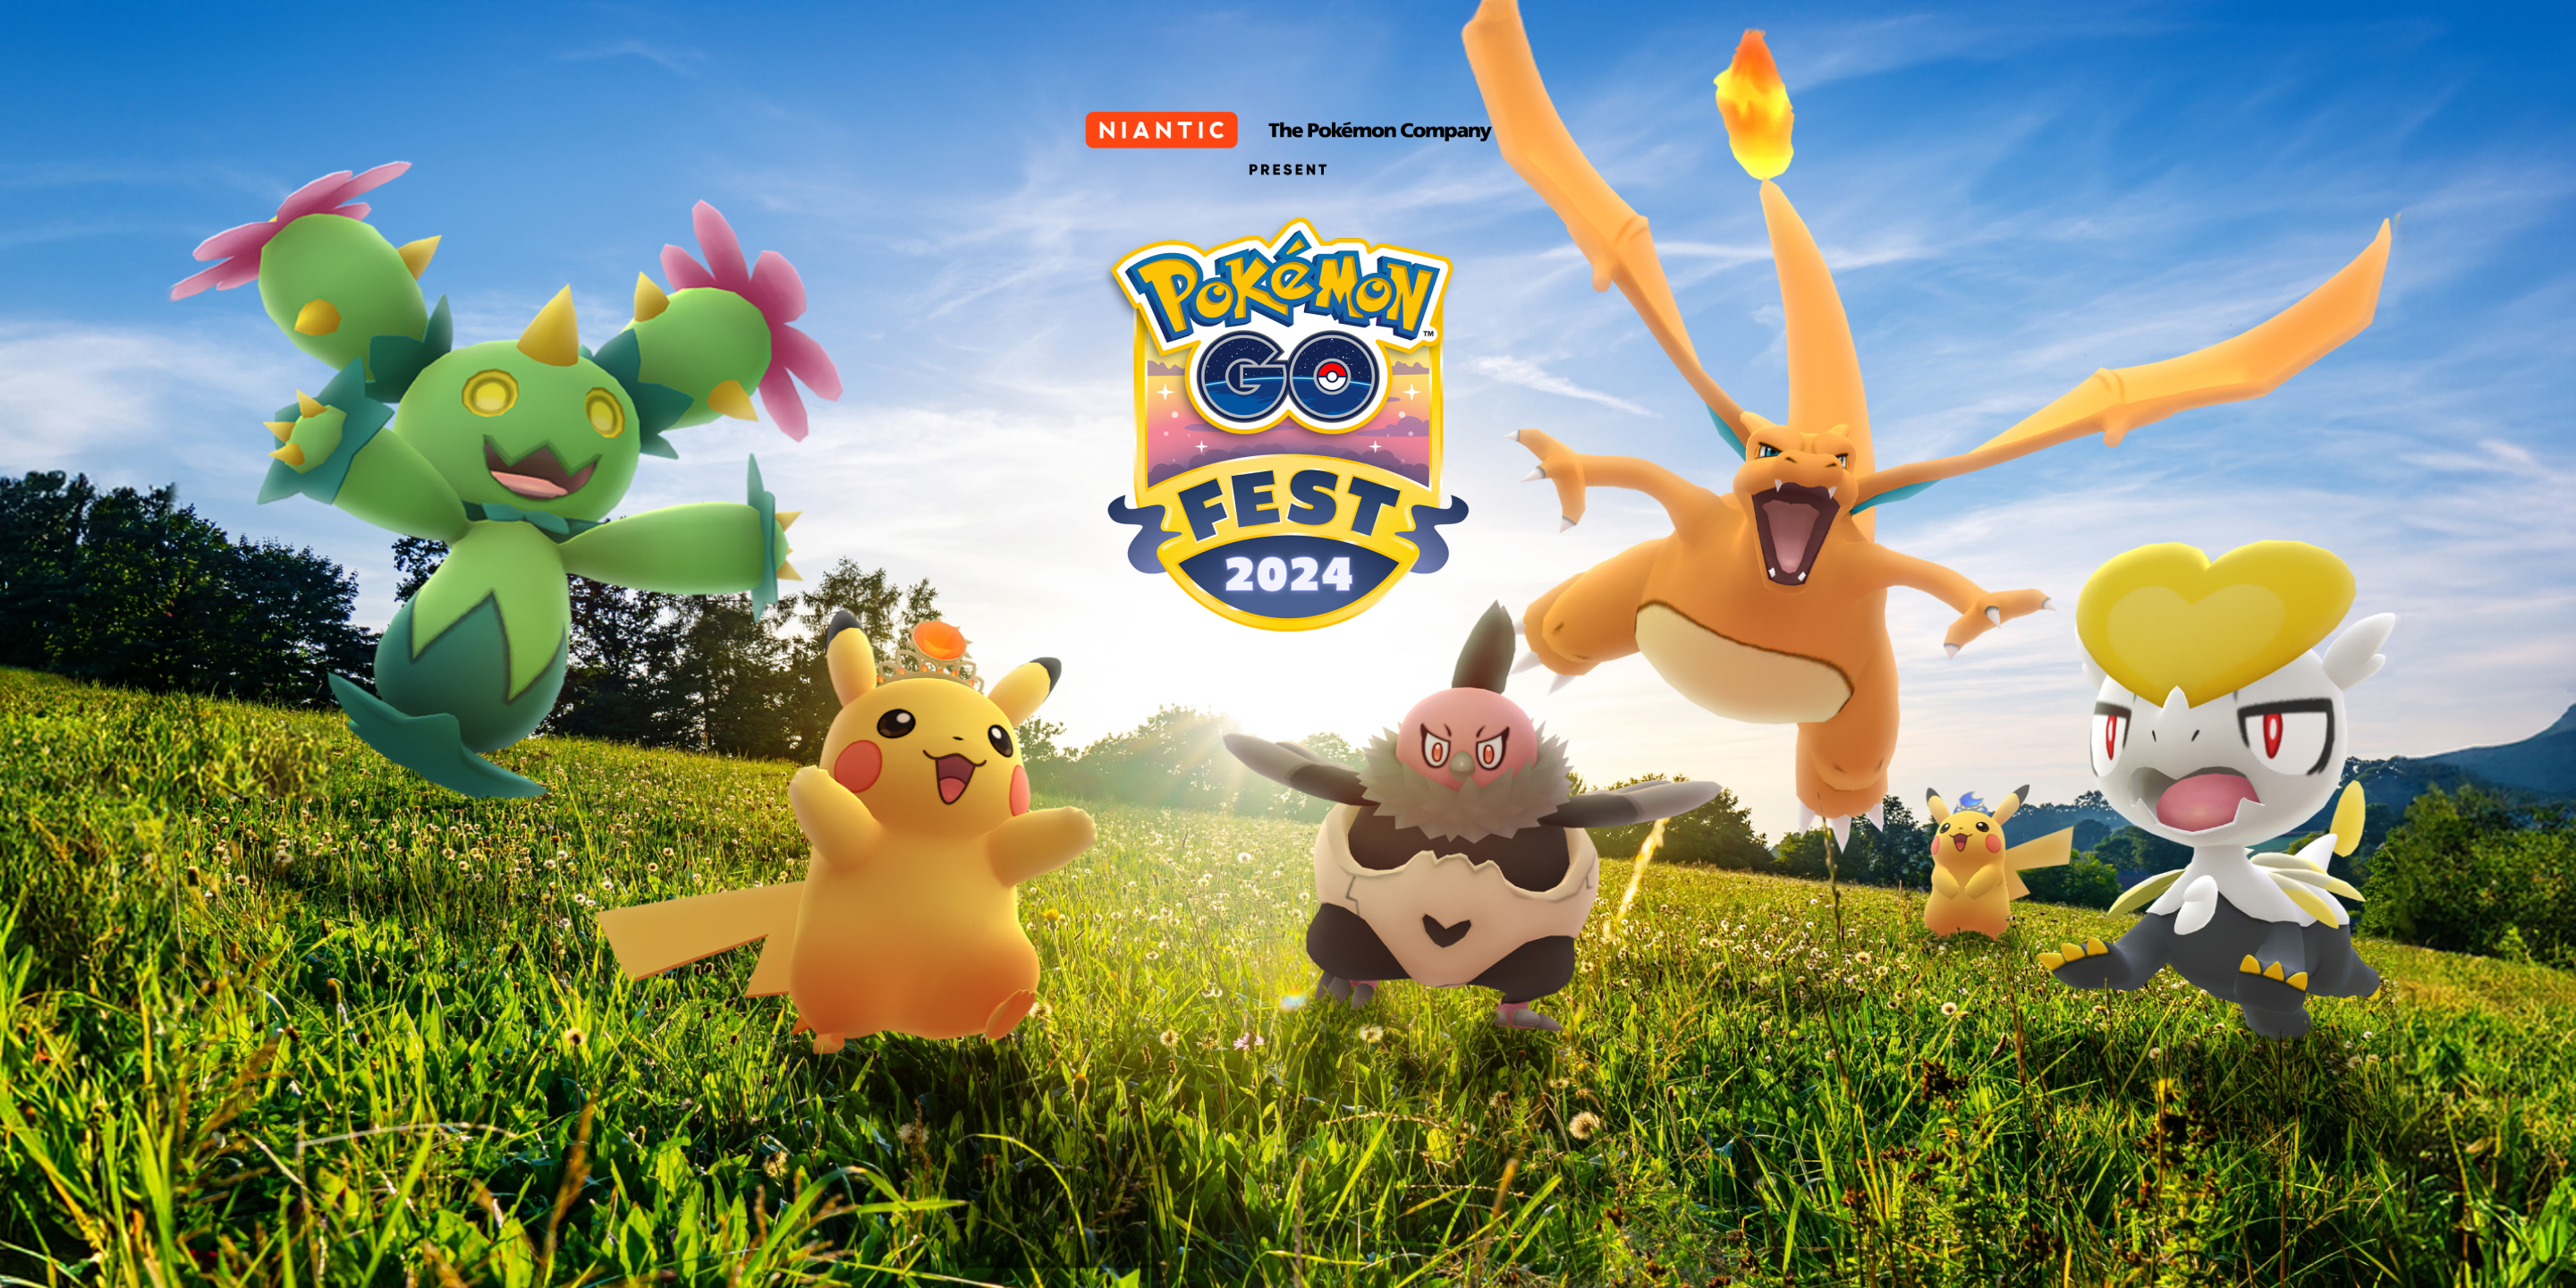 Pokemon Go “bật mí” hình thức mới của Pokemon trong Lễ hội game Go Fest 2024